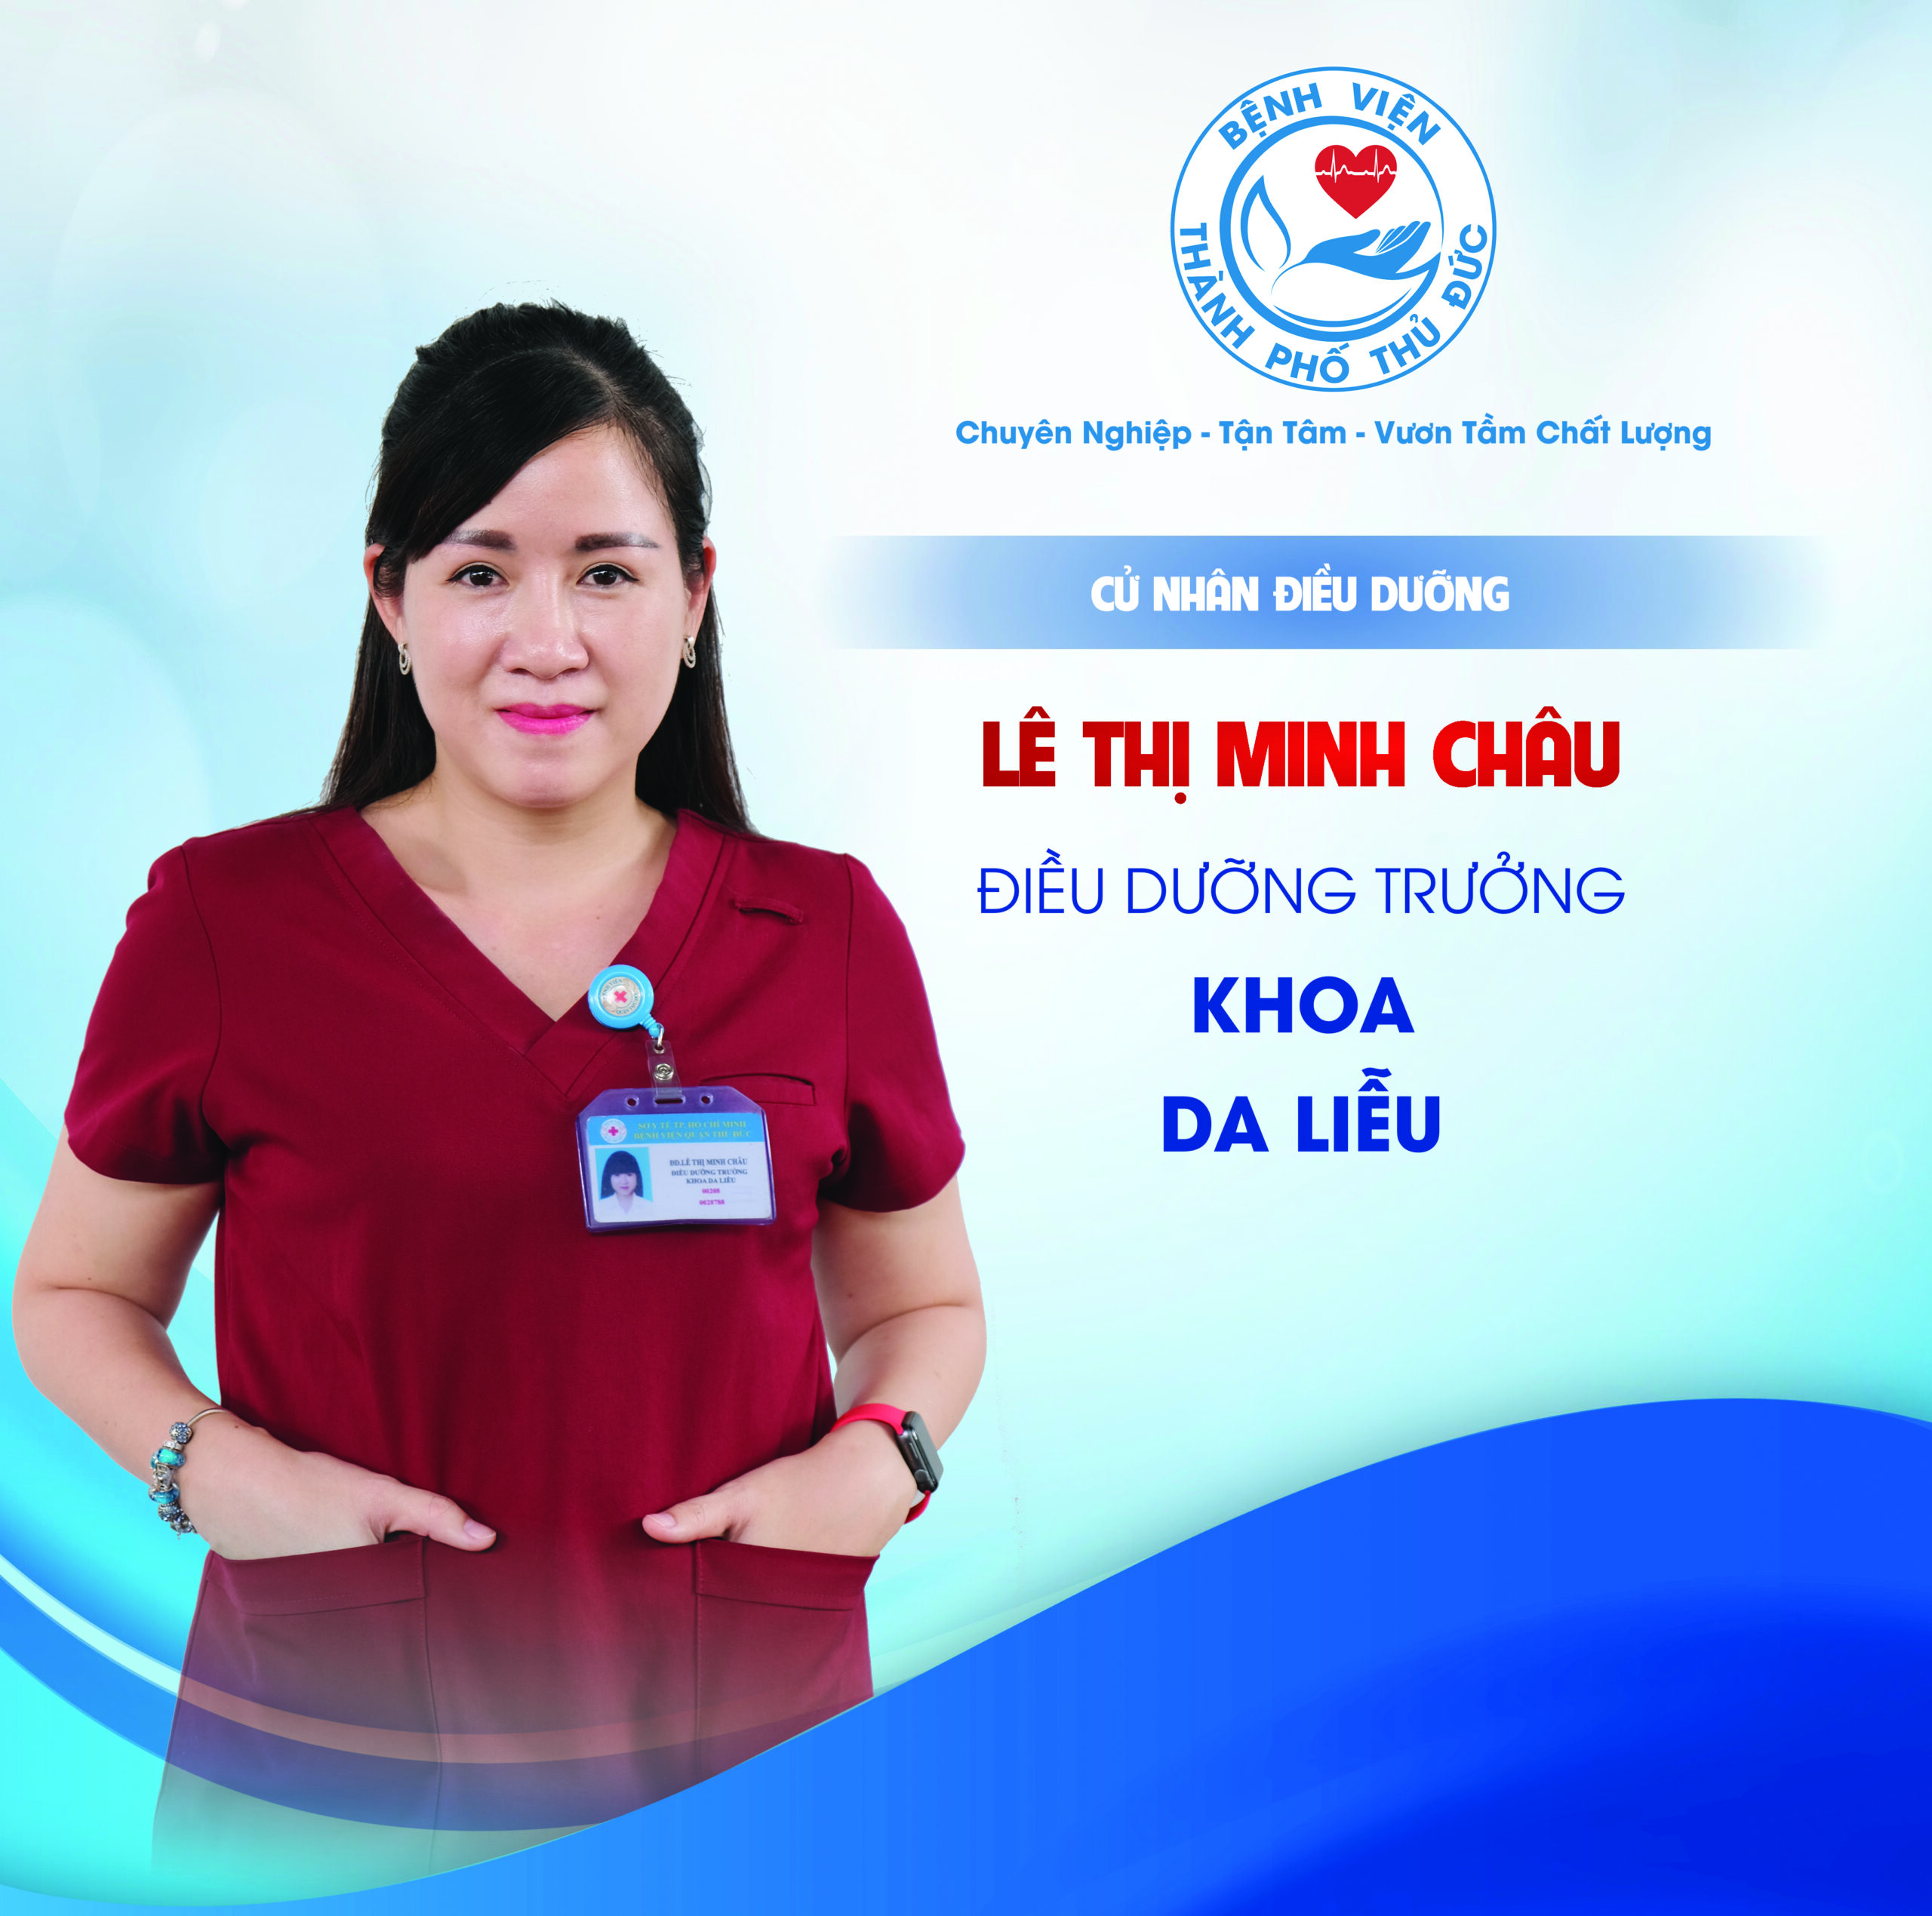 CNĐD Lê Thị Minh Châu - Điều dưỡng Trưởng khoa Da liễu